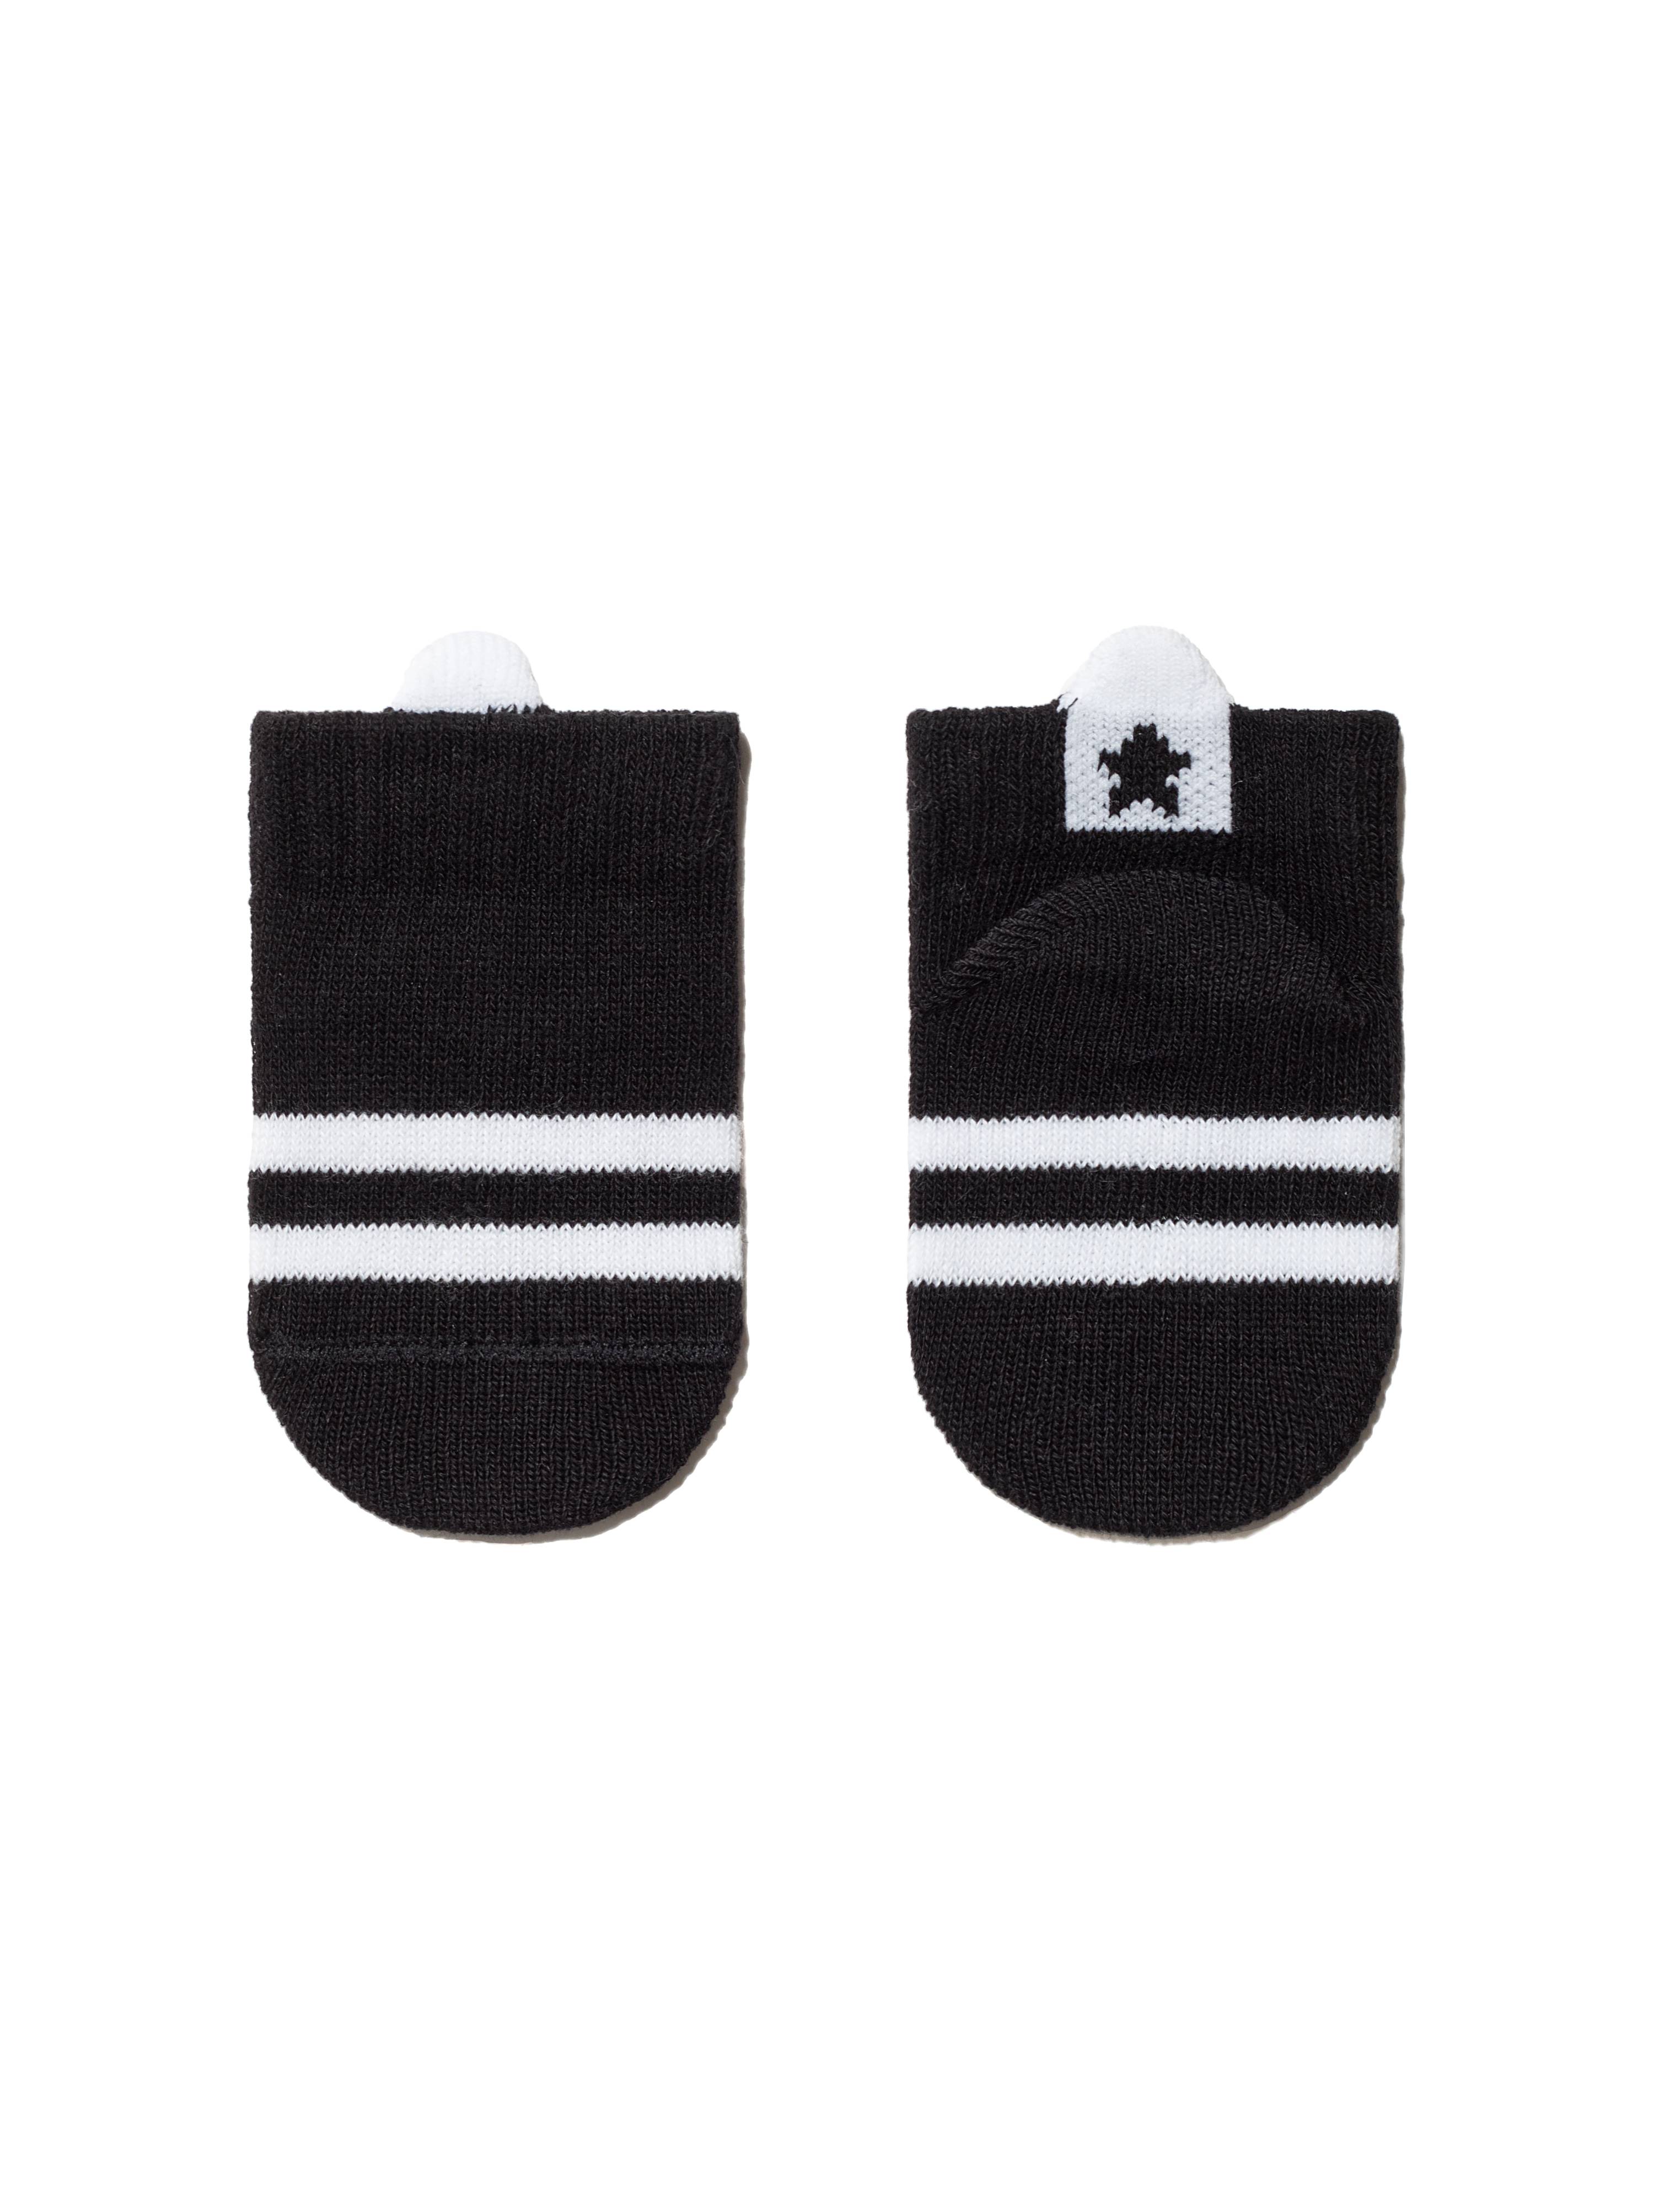 Хлопковые носки TIP-TOP с пикотом-«язычком» для самых маленьких, модель 502 Conte ⭐️, цвет черный, размер 10 - фото 1